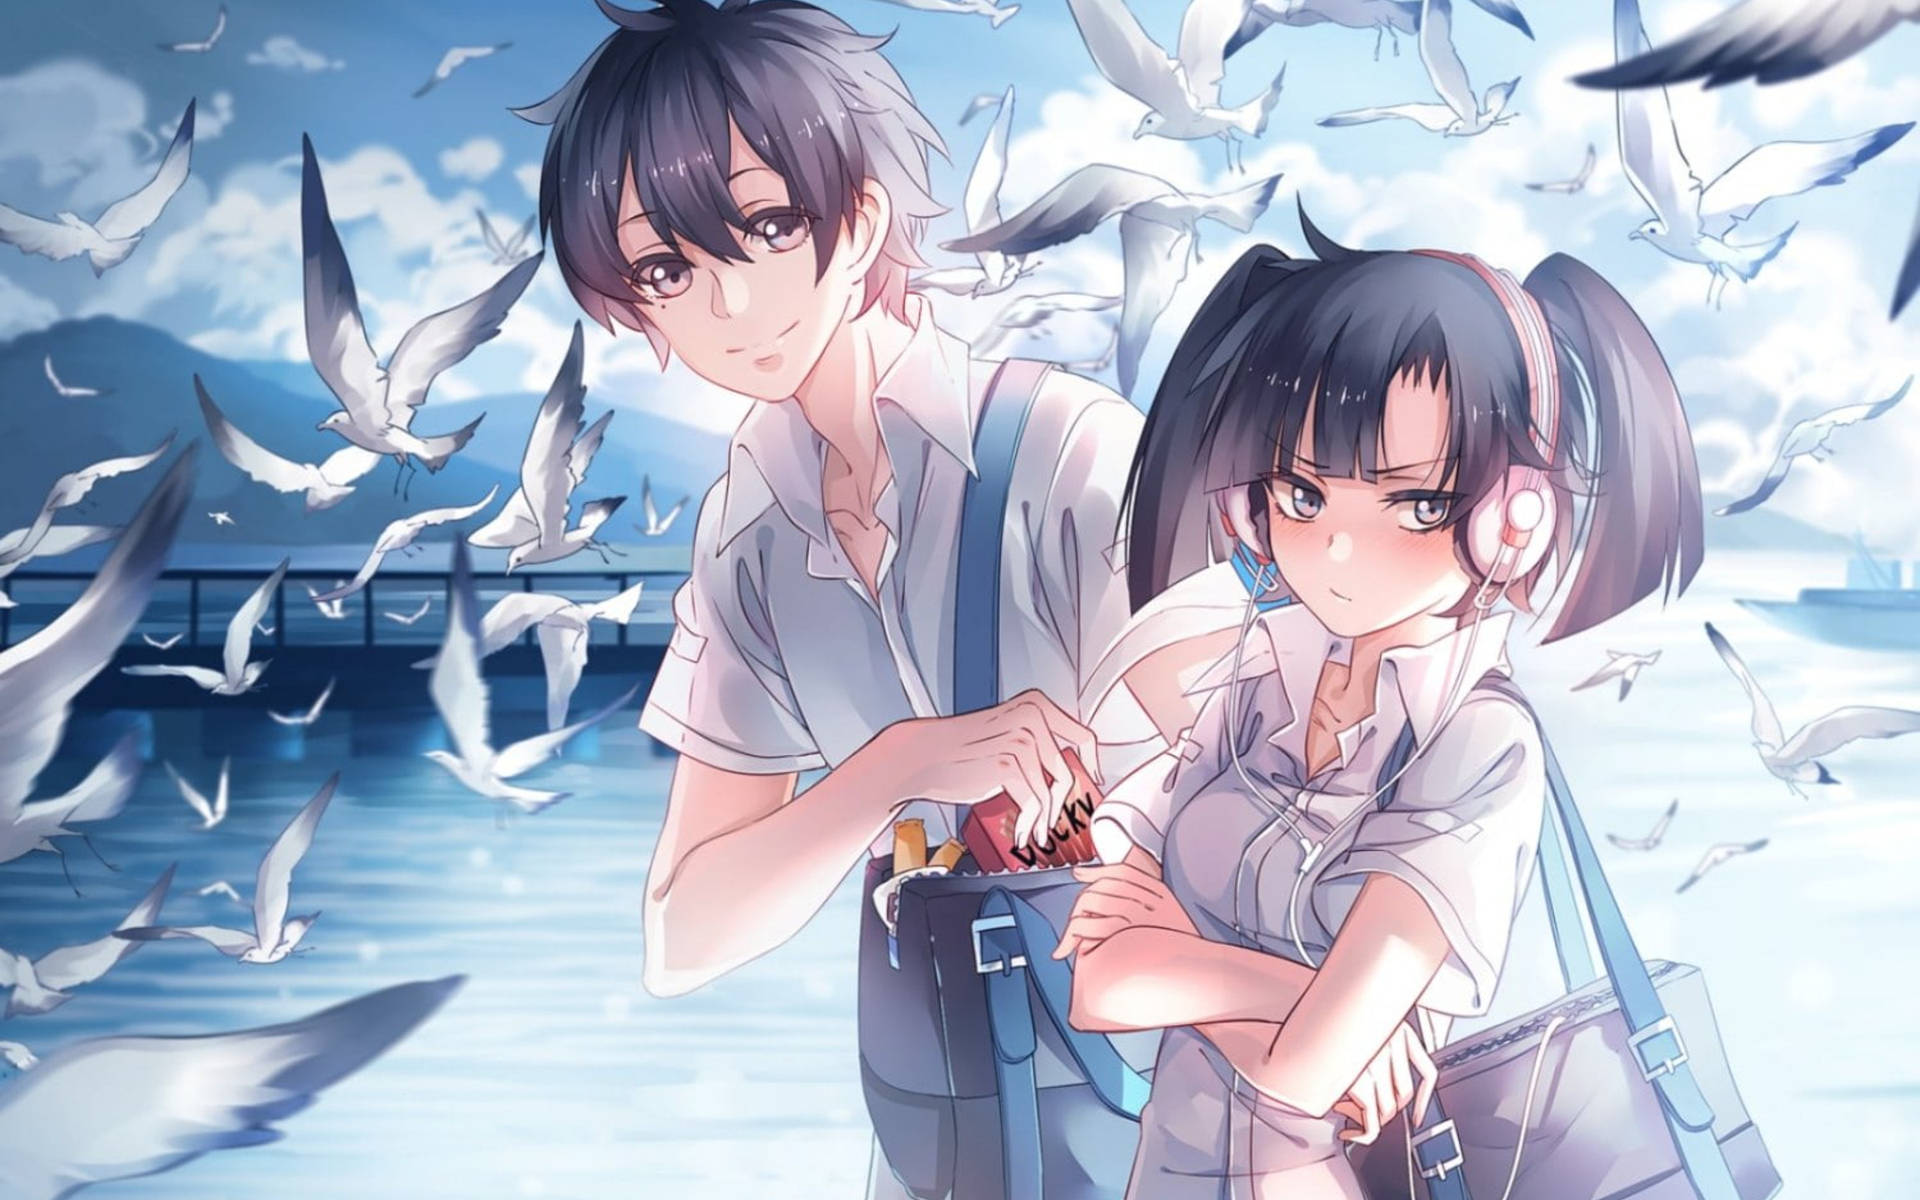 Cute Anime Couple With Birds